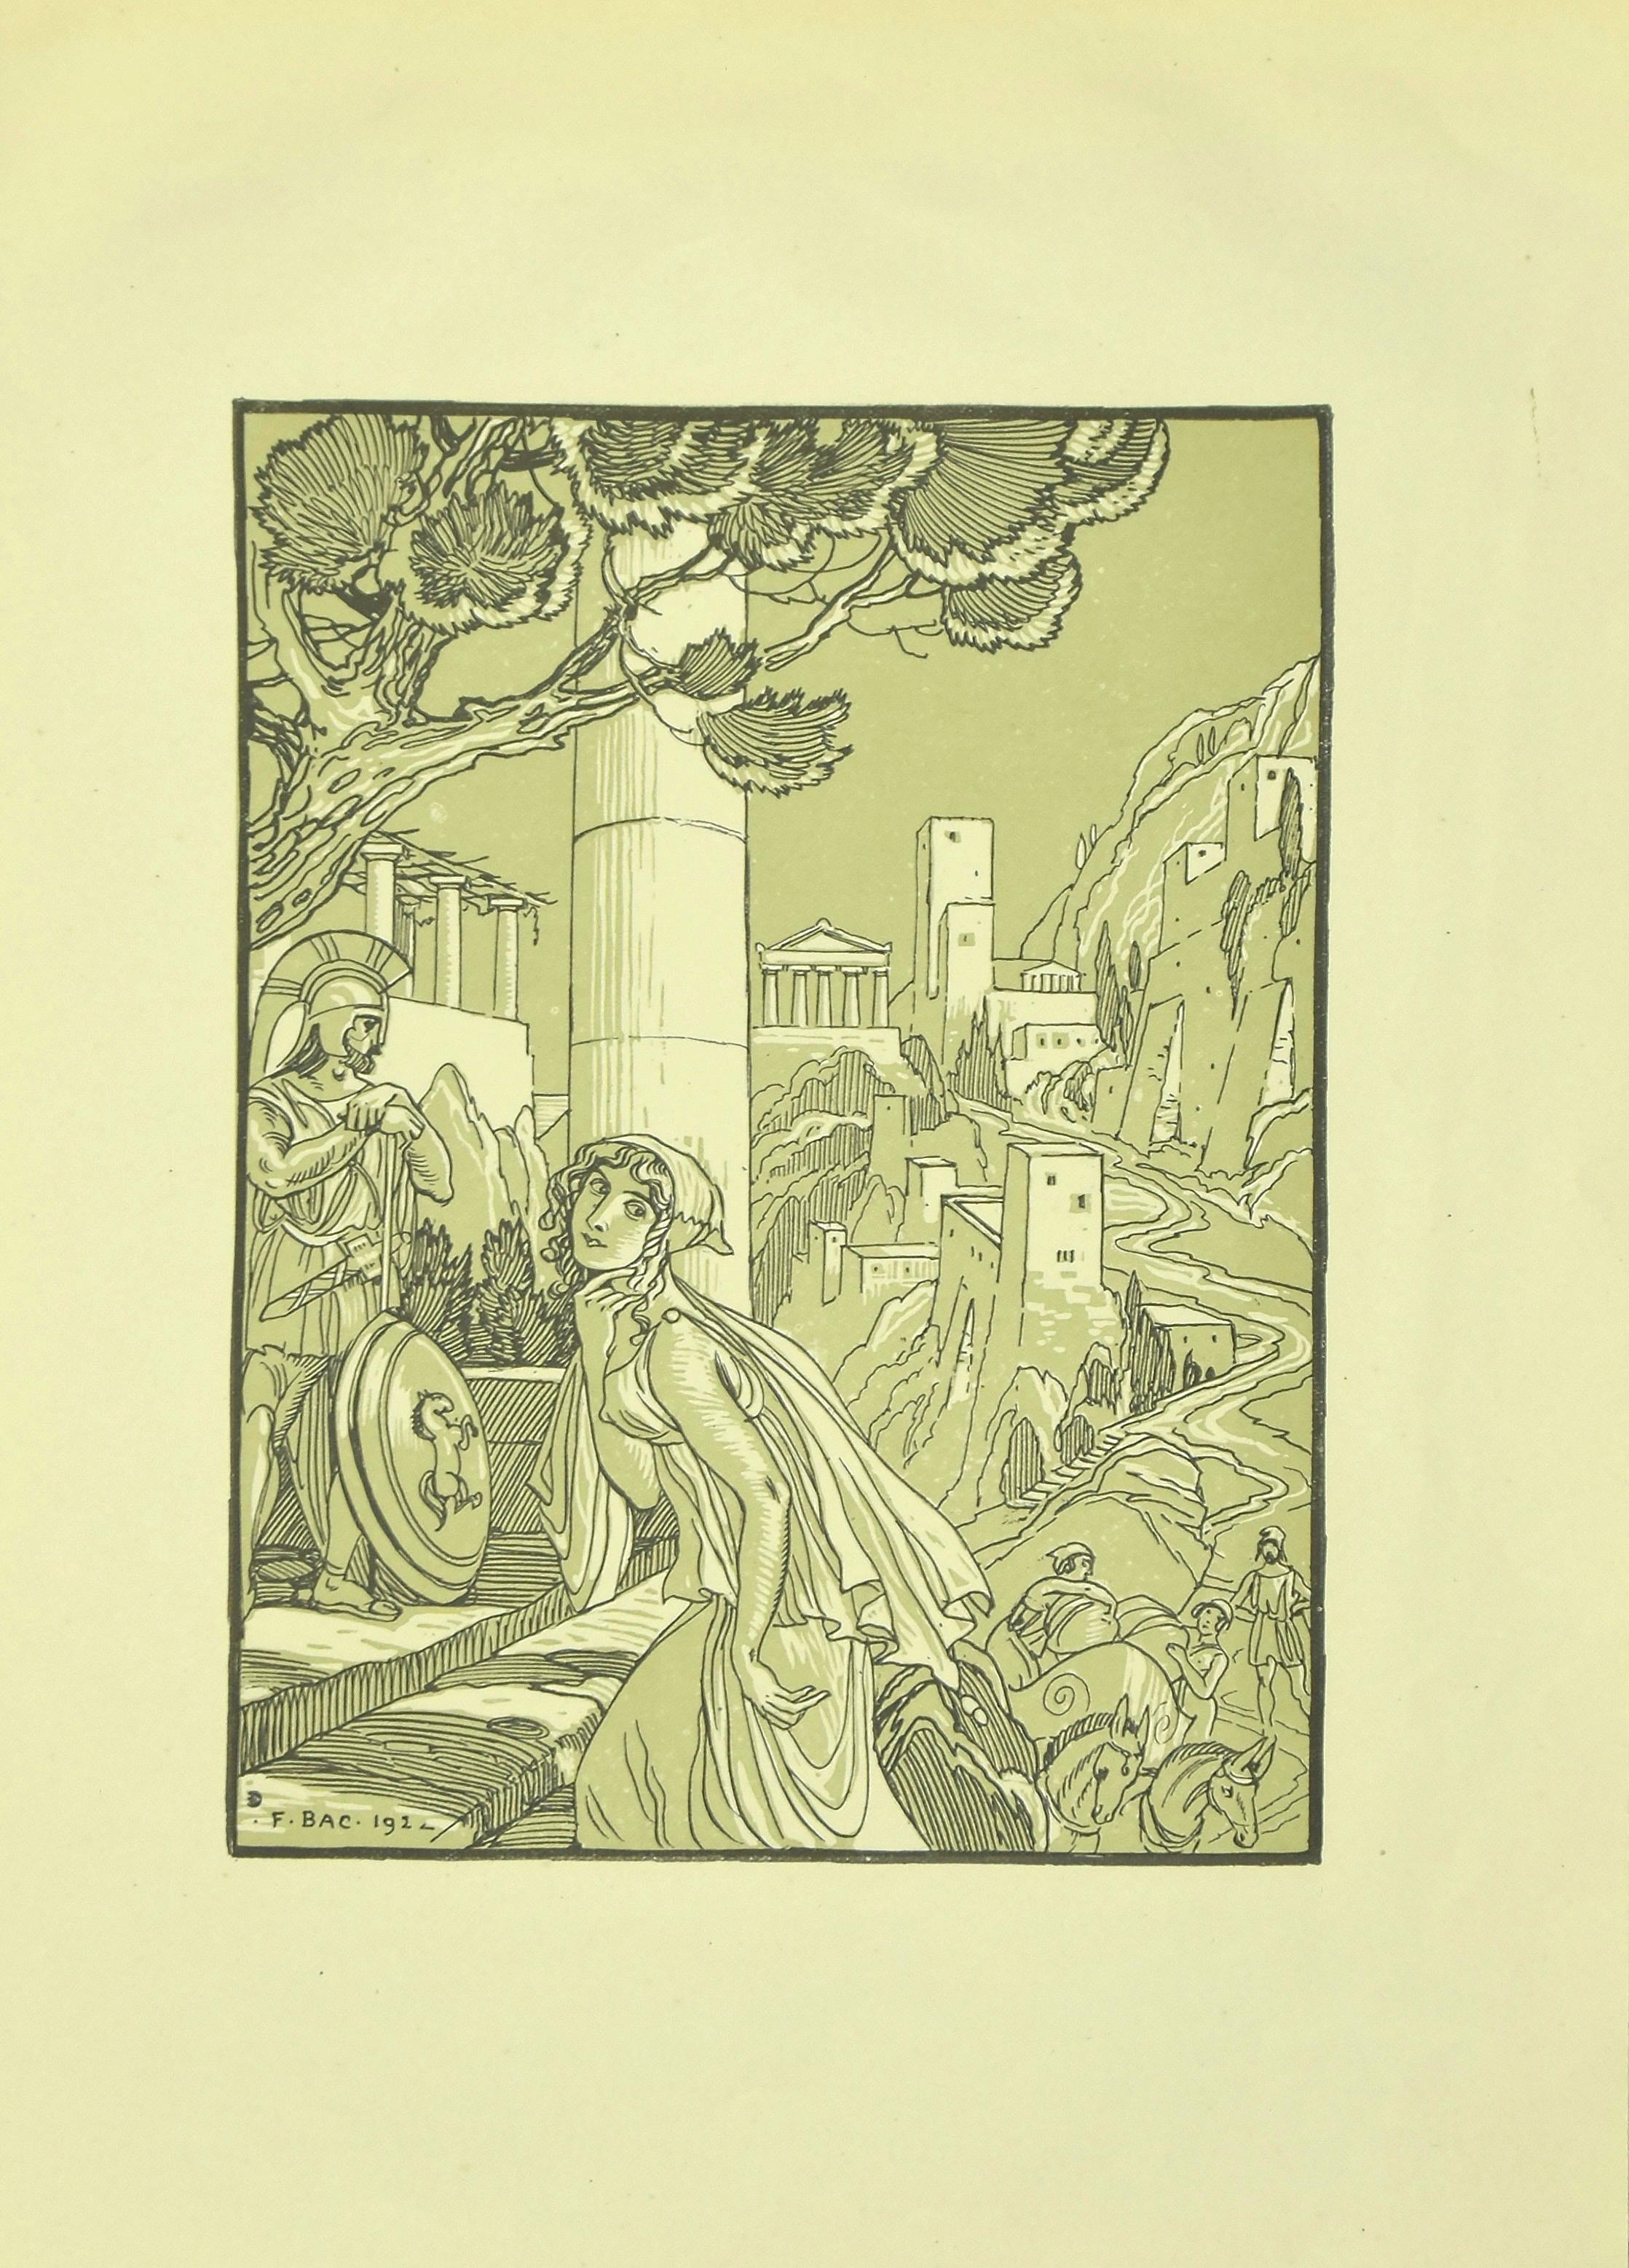 La ville grecque - Lithographie originale de F. Bac - 1922